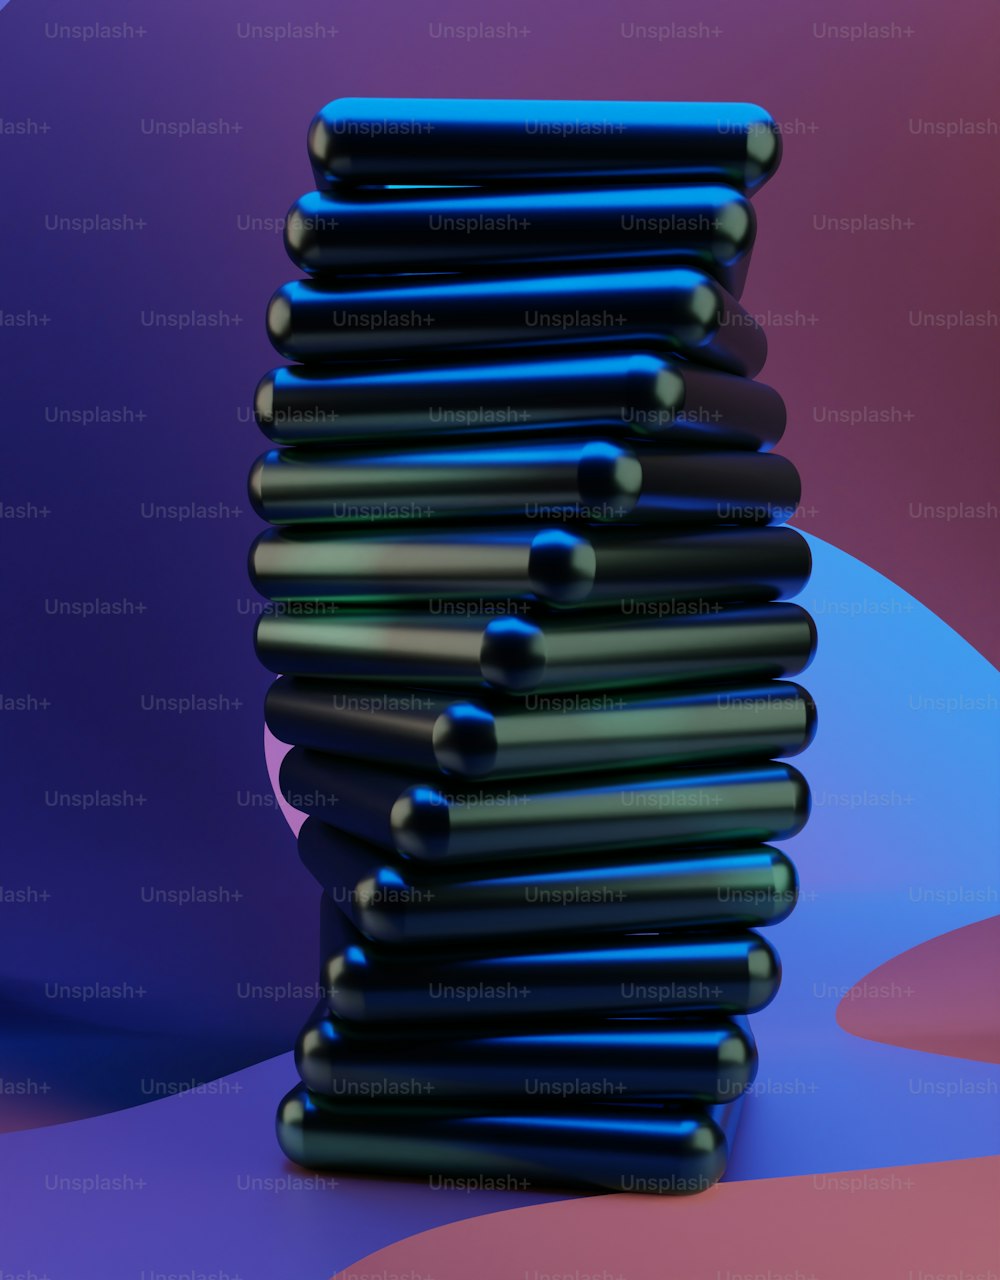 ein Stapel schwarzer Objekte, die auf einem violetten und blauen Hintergrund sitzen